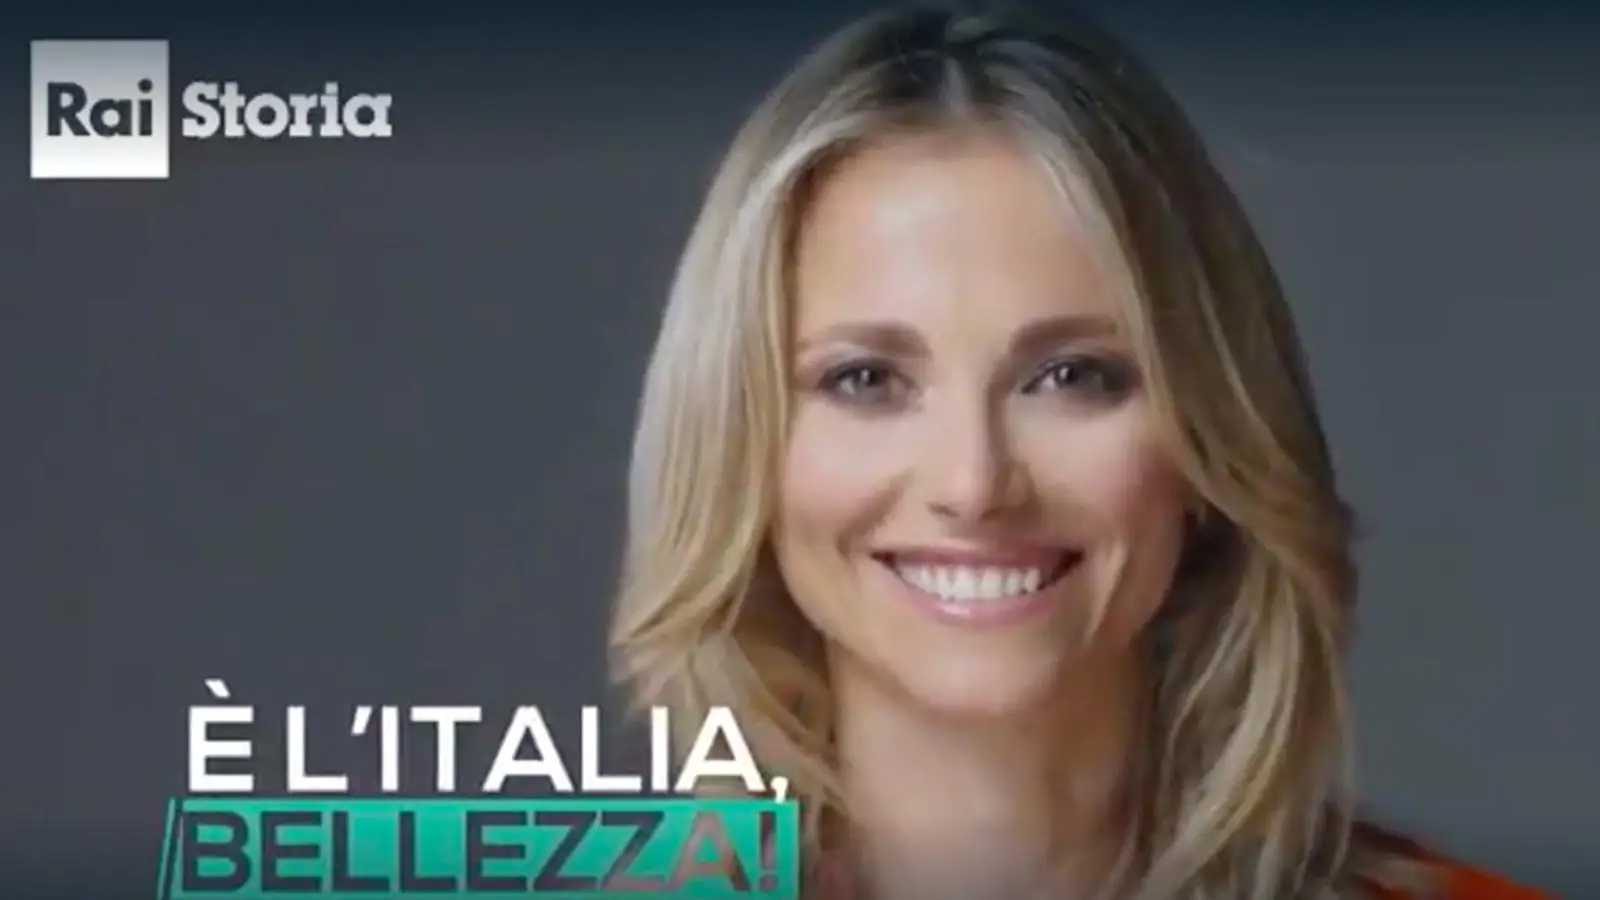 Stasera in TV: Su Rai Storia (canale 54) "È l'Italia bellezza!"- Con Francesca Fialdini tra Toscana, Umbria, Lazio